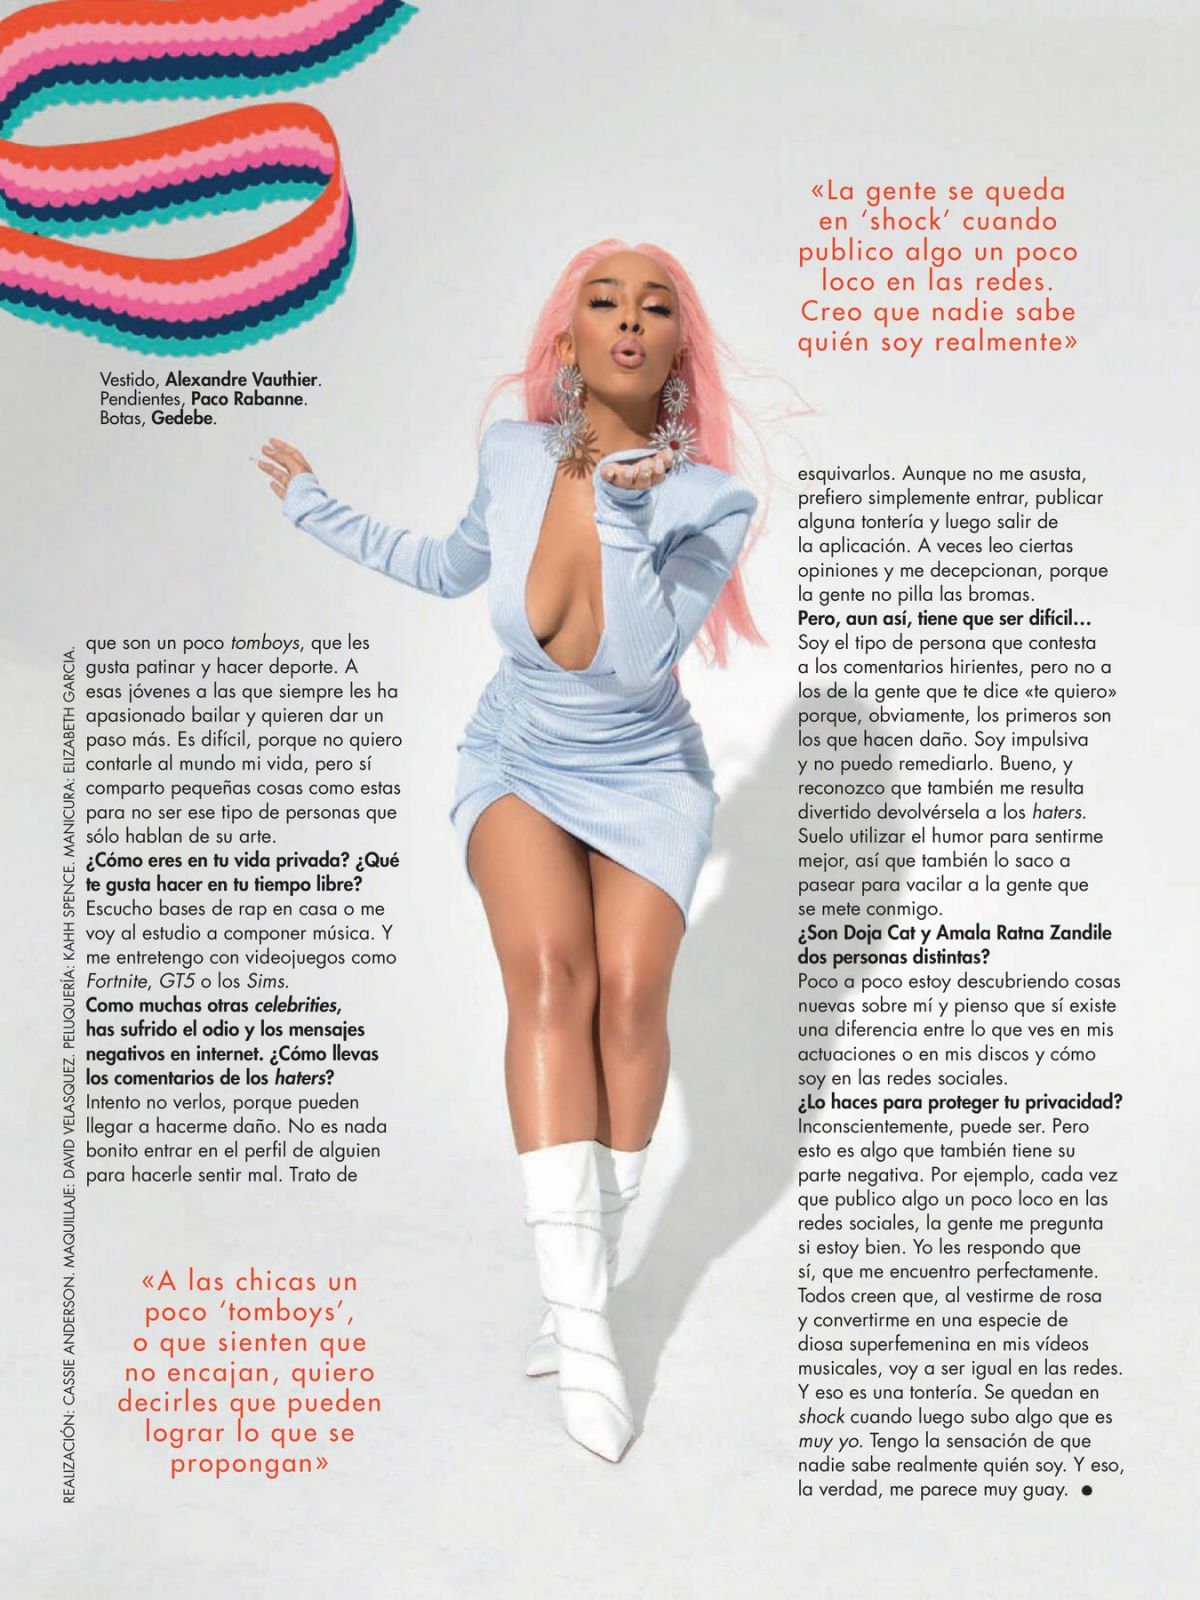 Doja Cat in Cosmopolitan Magazine, Spain November 2020 Issue 3